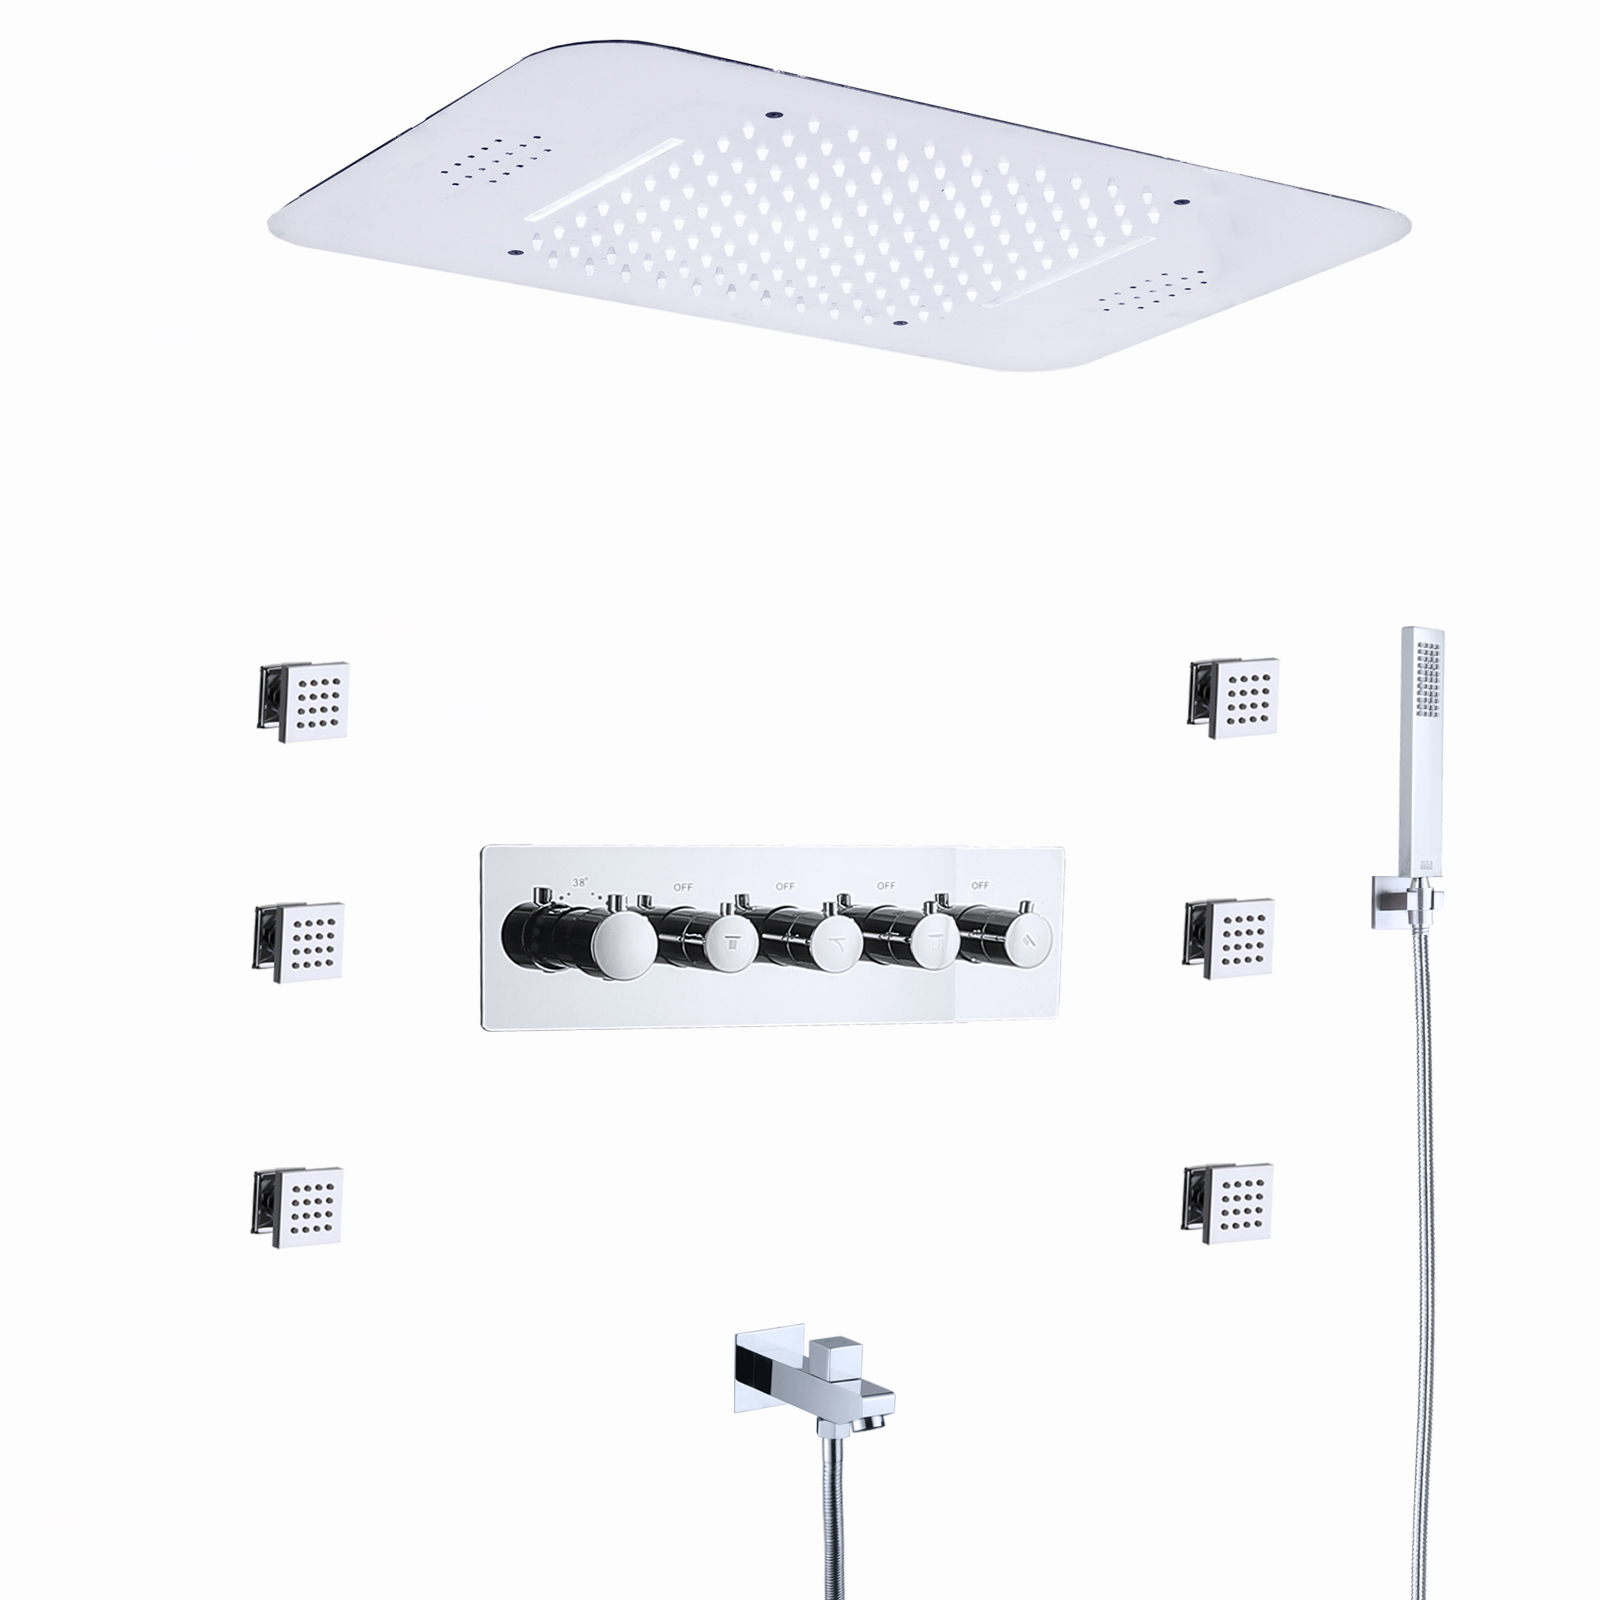 Sistema de ducha con cabezal LED musical, juegos de baño y ducha termostáticos con lluvia y cascada de 23x15 pulgadas para baño